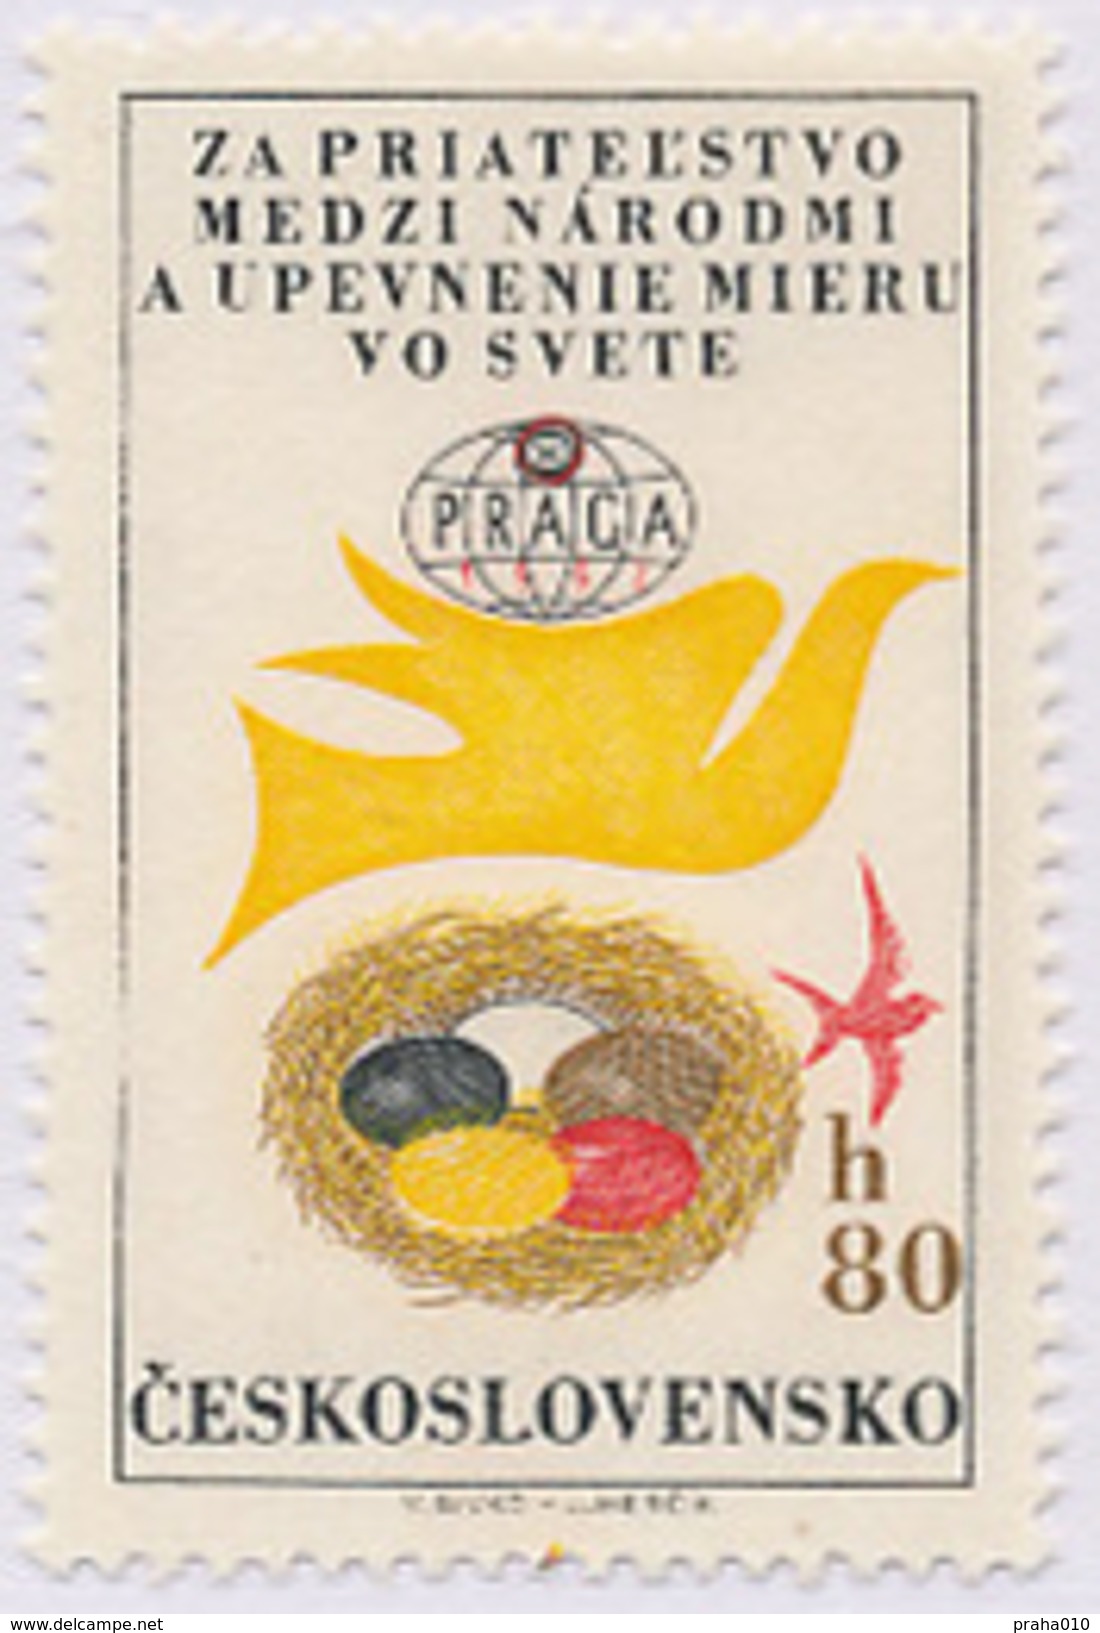 Czechoslovakia / Stamps (1962) L0050 (Air Mail Stamp): World Stamp Exhibition PRAGA 1962; Painter: V. Sivko - Luchtpost